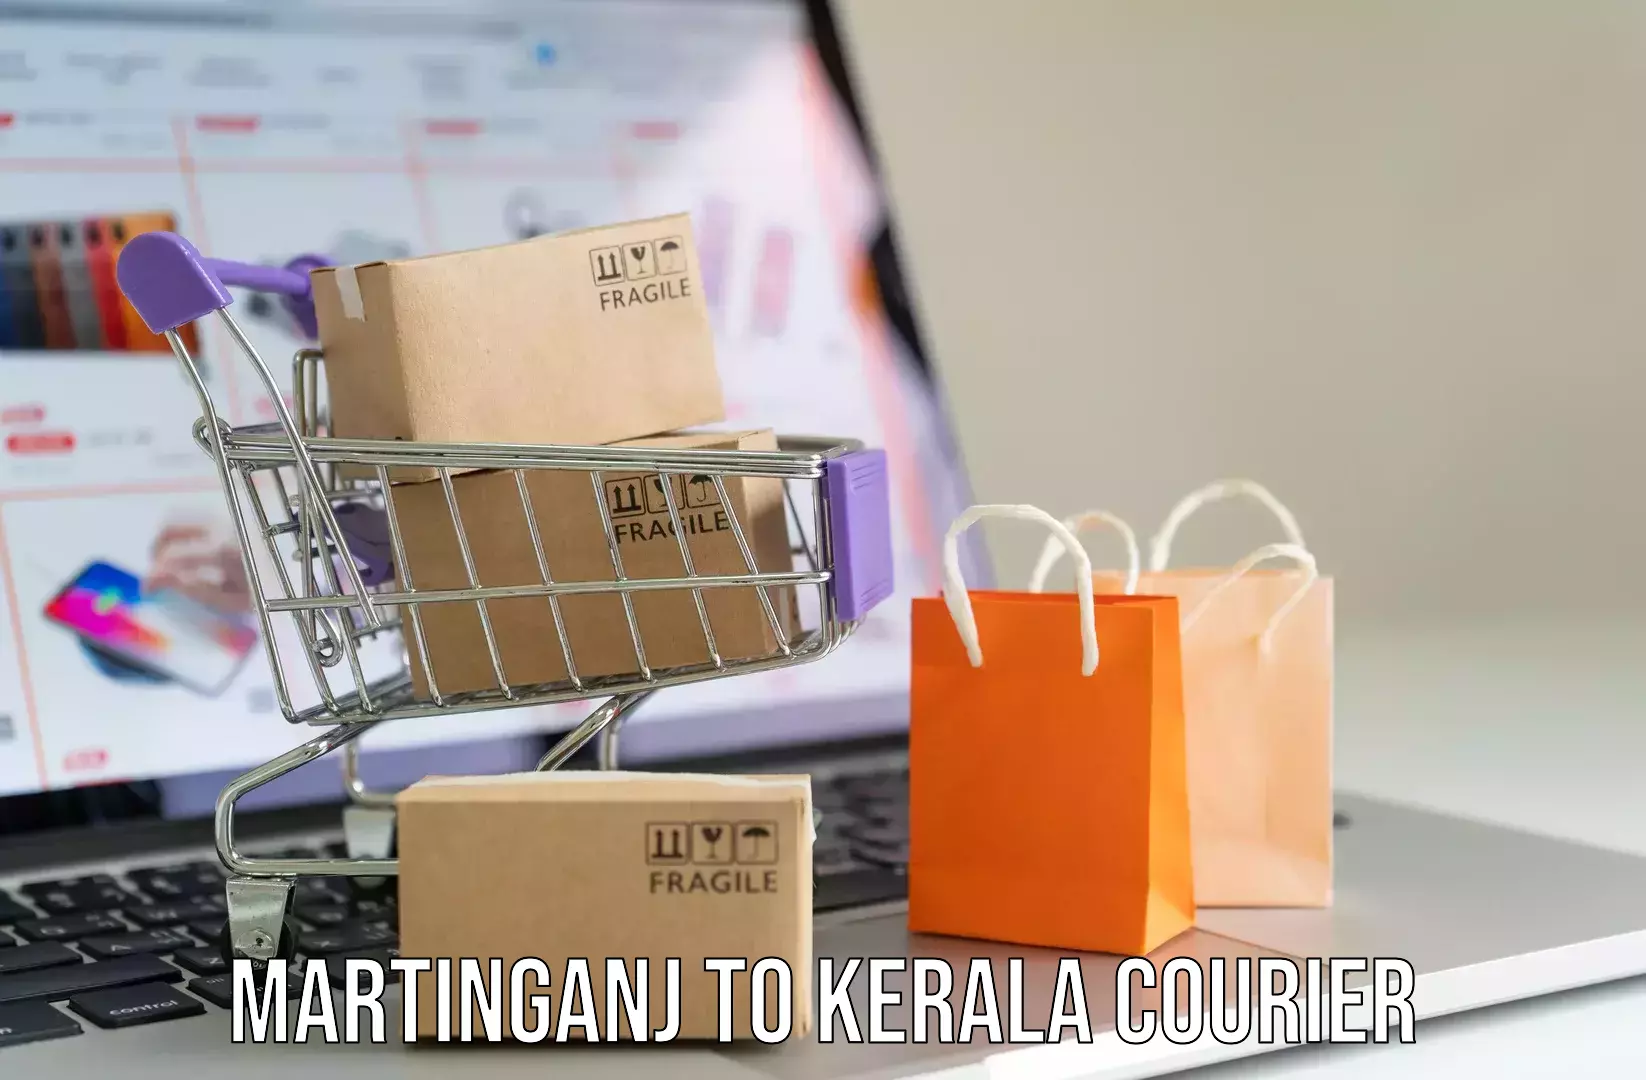 Customized luggage delivery Martinganj to Manthuka